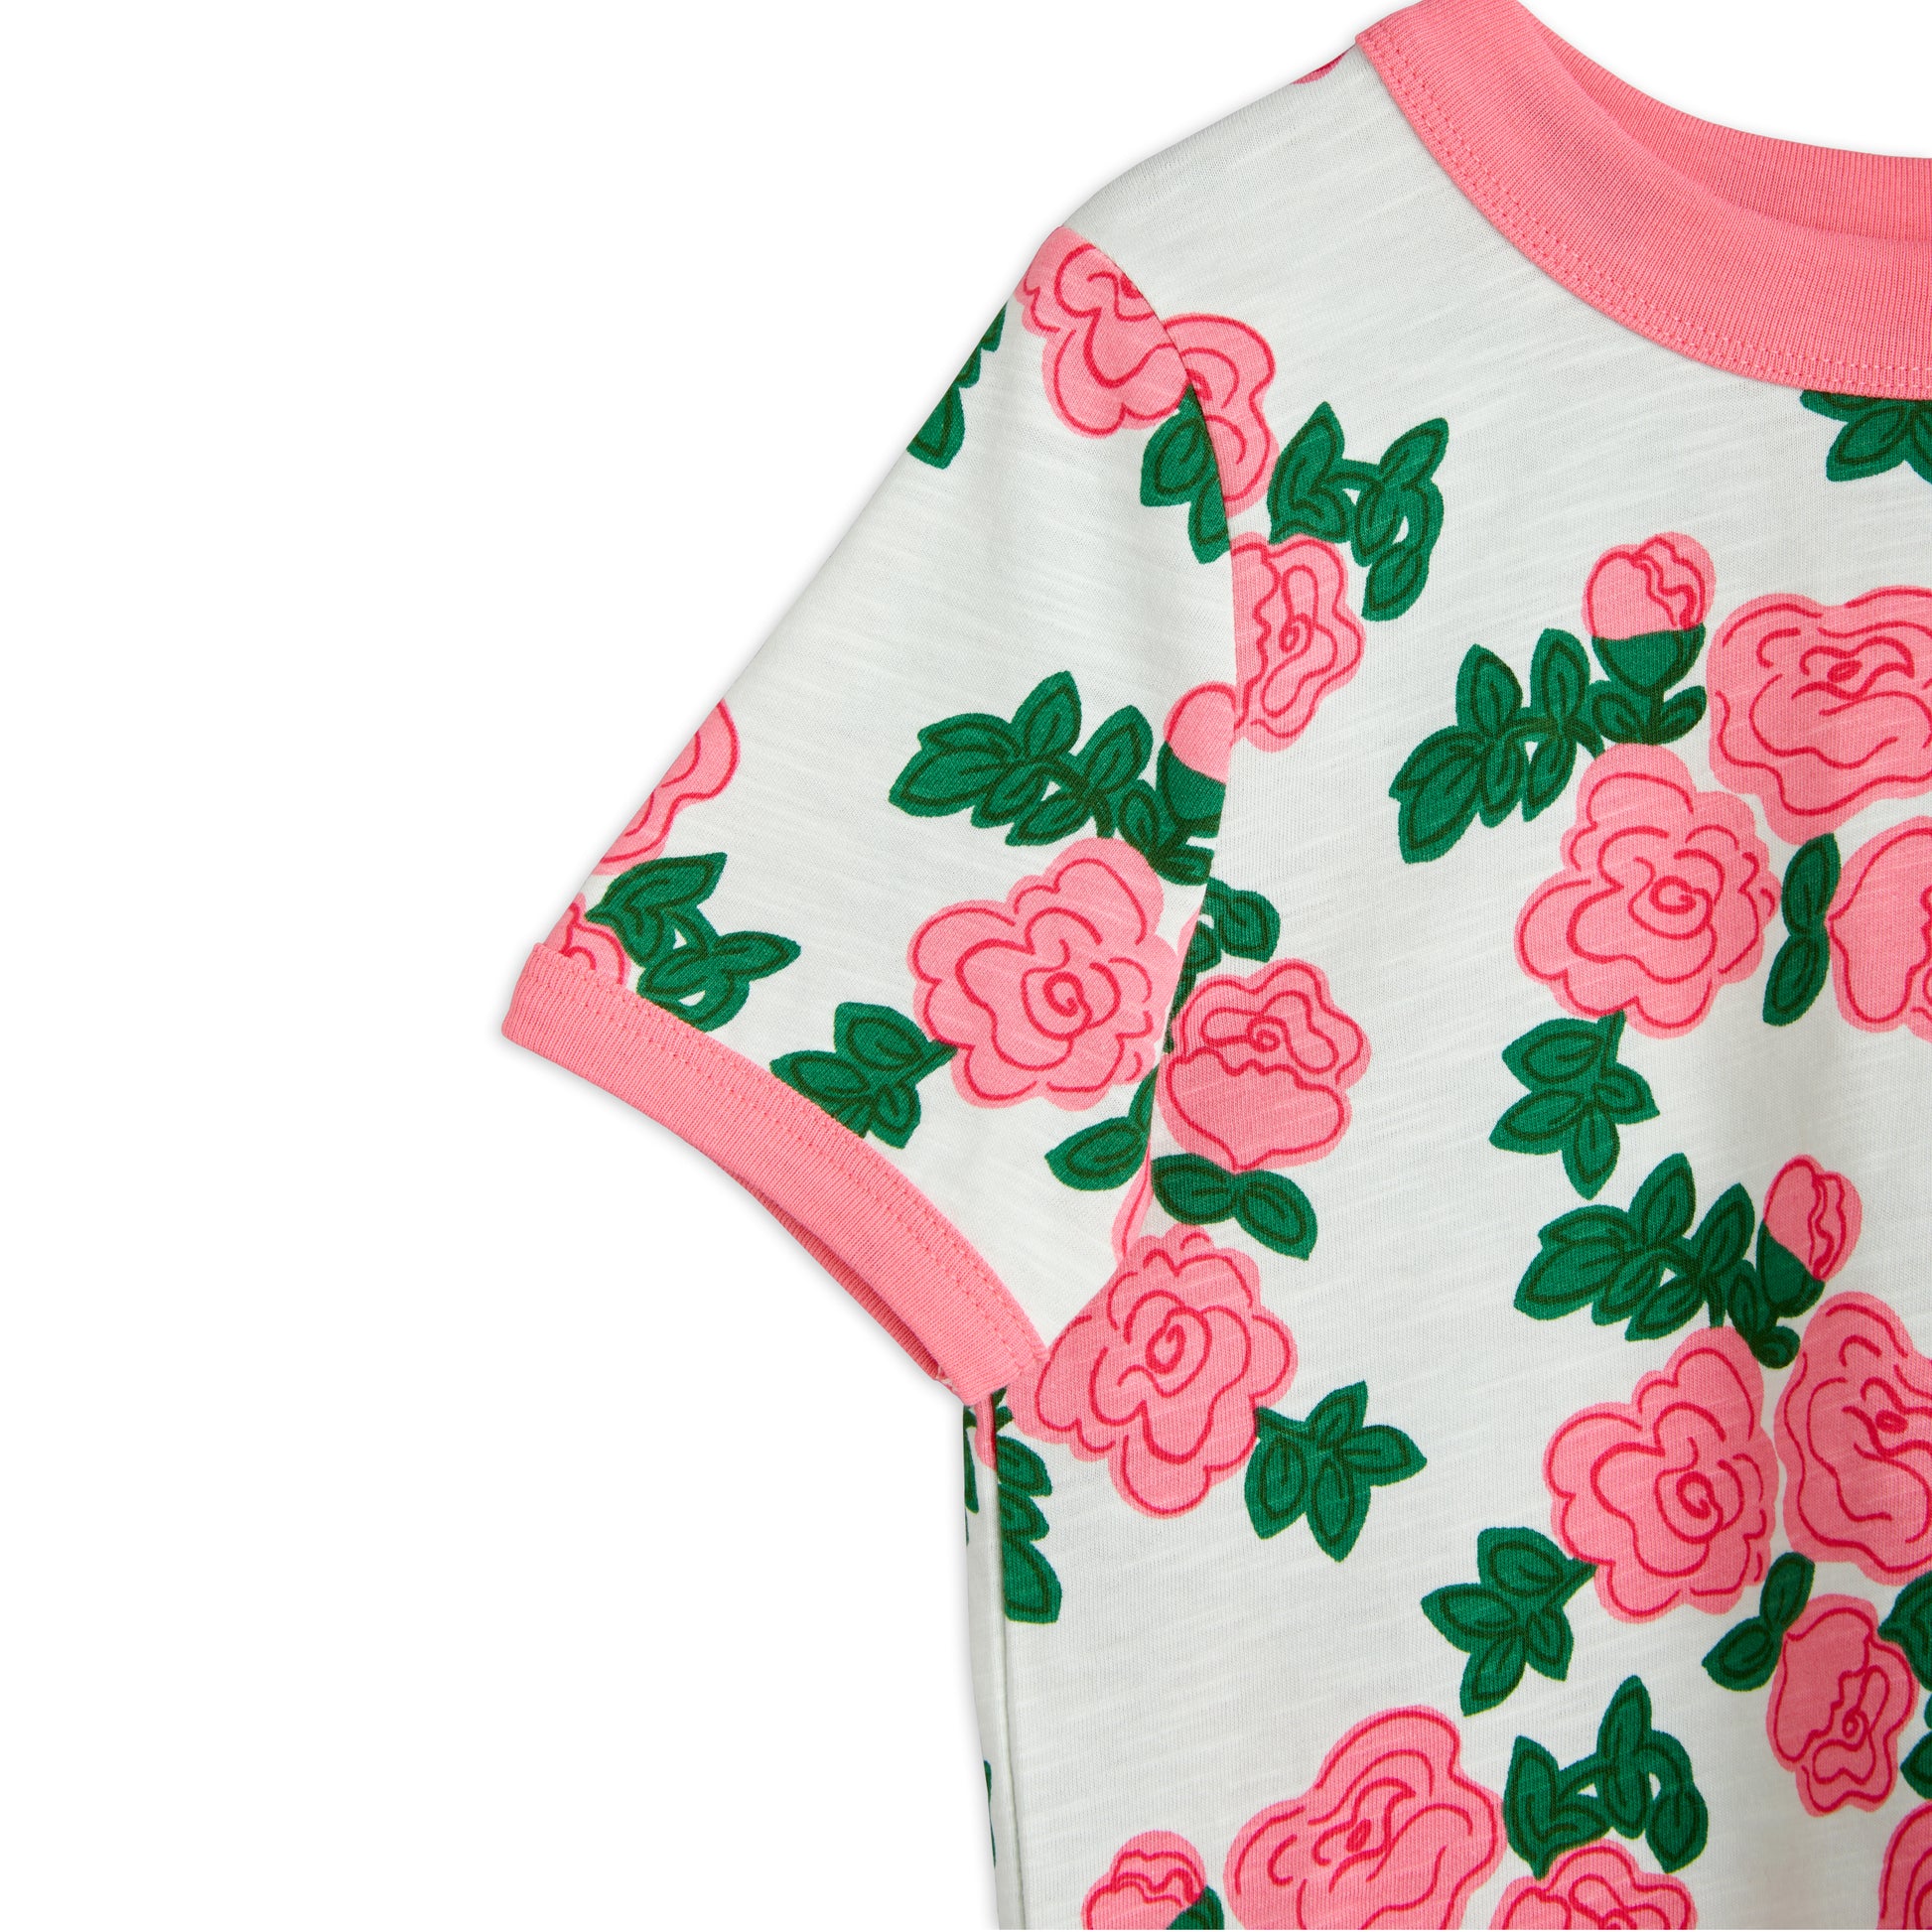 MINI RODINI Roses T-Shirt ALWAYS SHOW